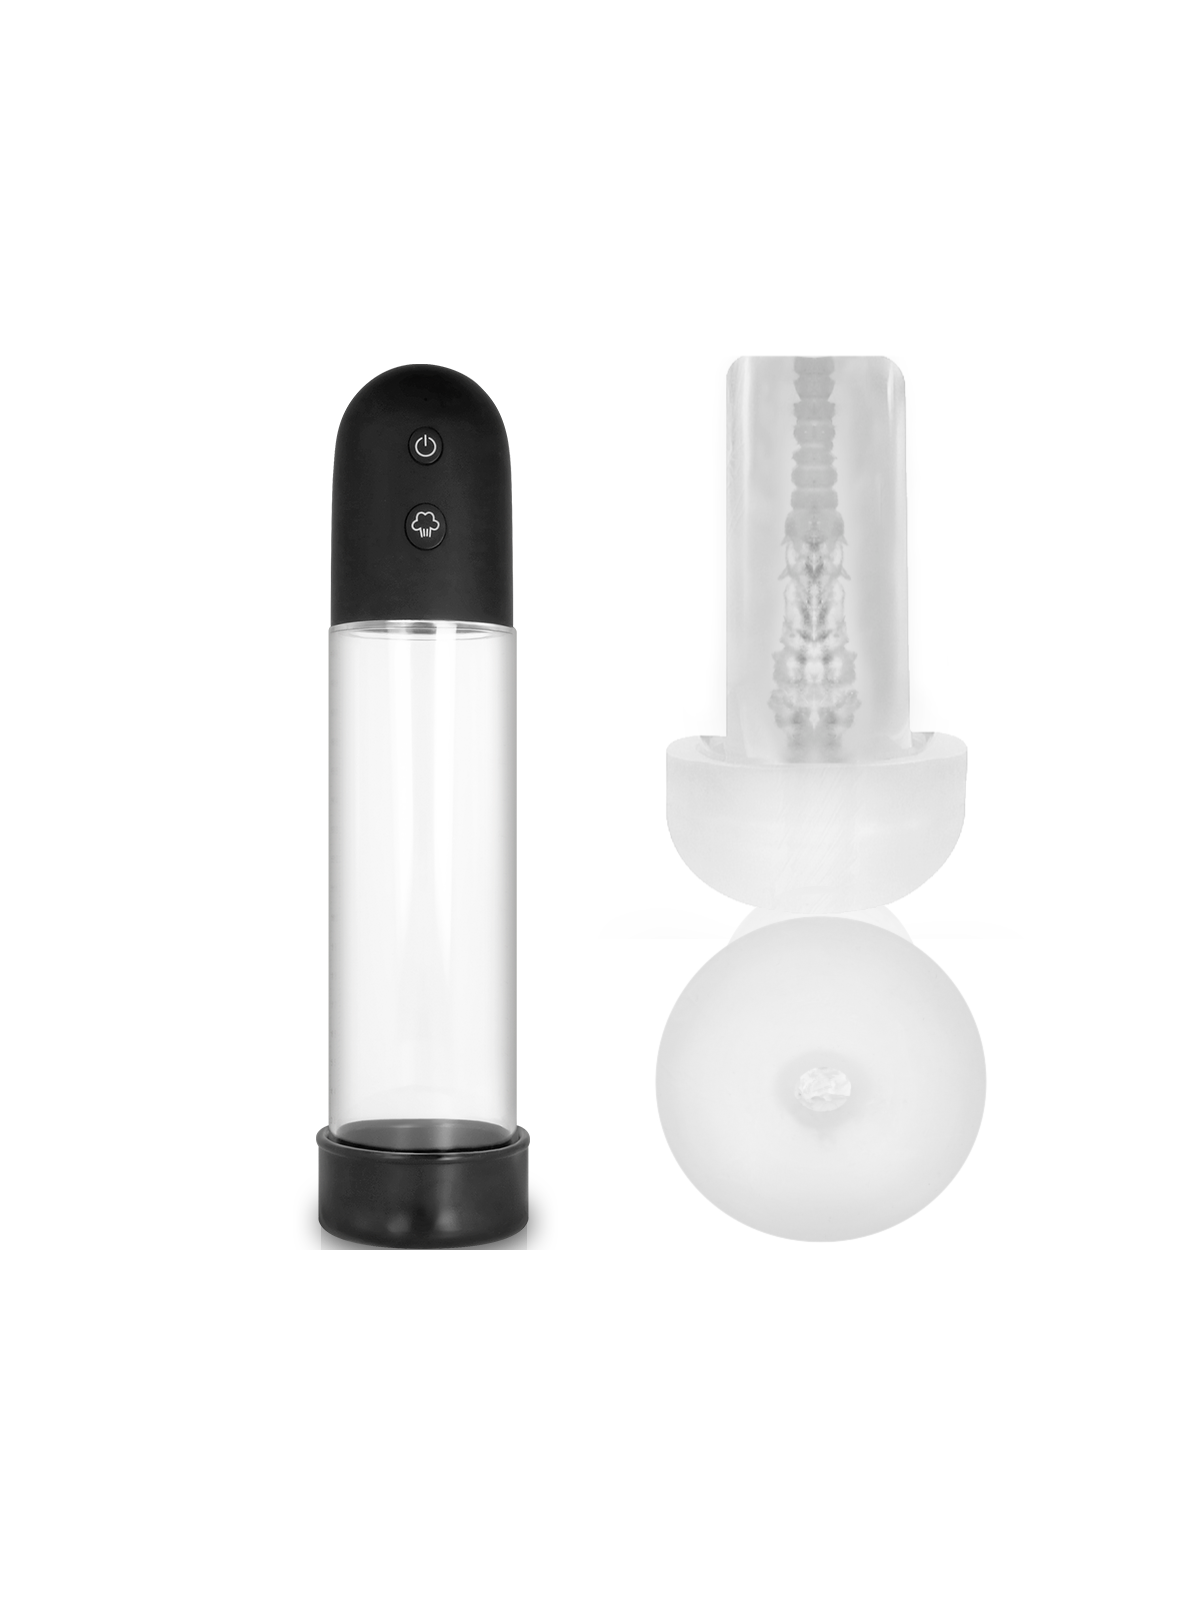 Pump Addicted Bomba Erección Rx11 Automática Con Masturbador - Comprar Bomba vacío pene Pump Addicted - Bombas de vacío pene (1)